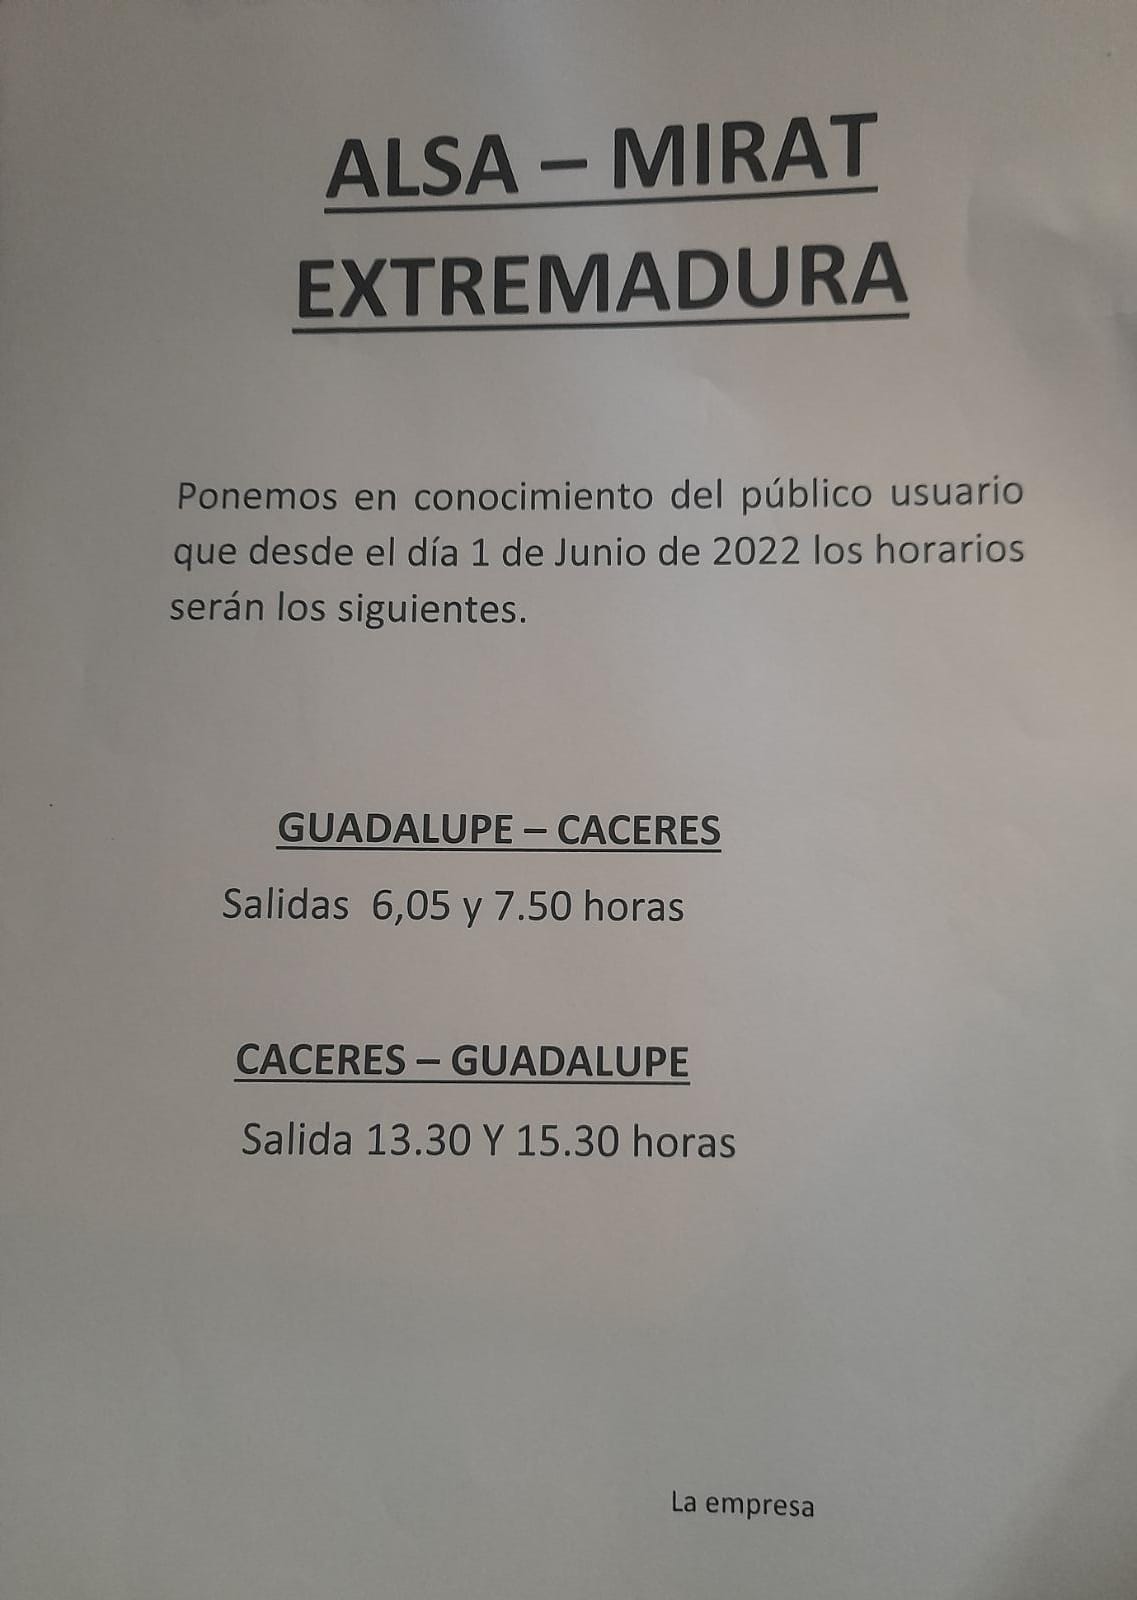 Cambio de horarios Alsa Mirat Extremadura (junio 2022) - Guadalupe (Cáceres)